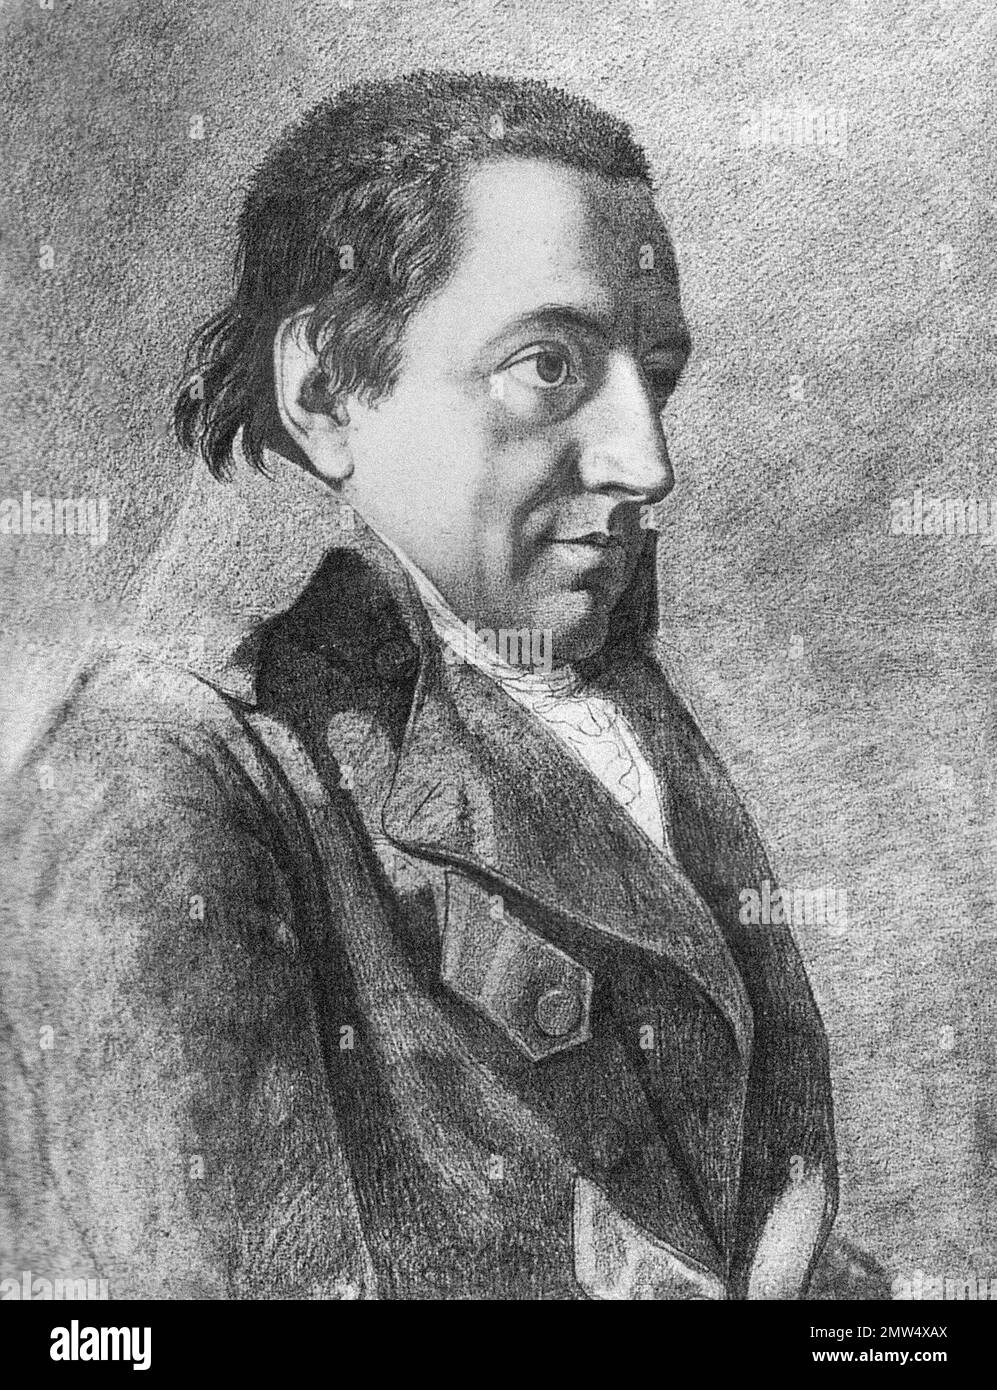 Johann Fichte. Portrait of the German philosopher, Johann Gottlieb Fichte (1762-1814) by Friedrich Bury, drawing, c. 1801 Stock Photo